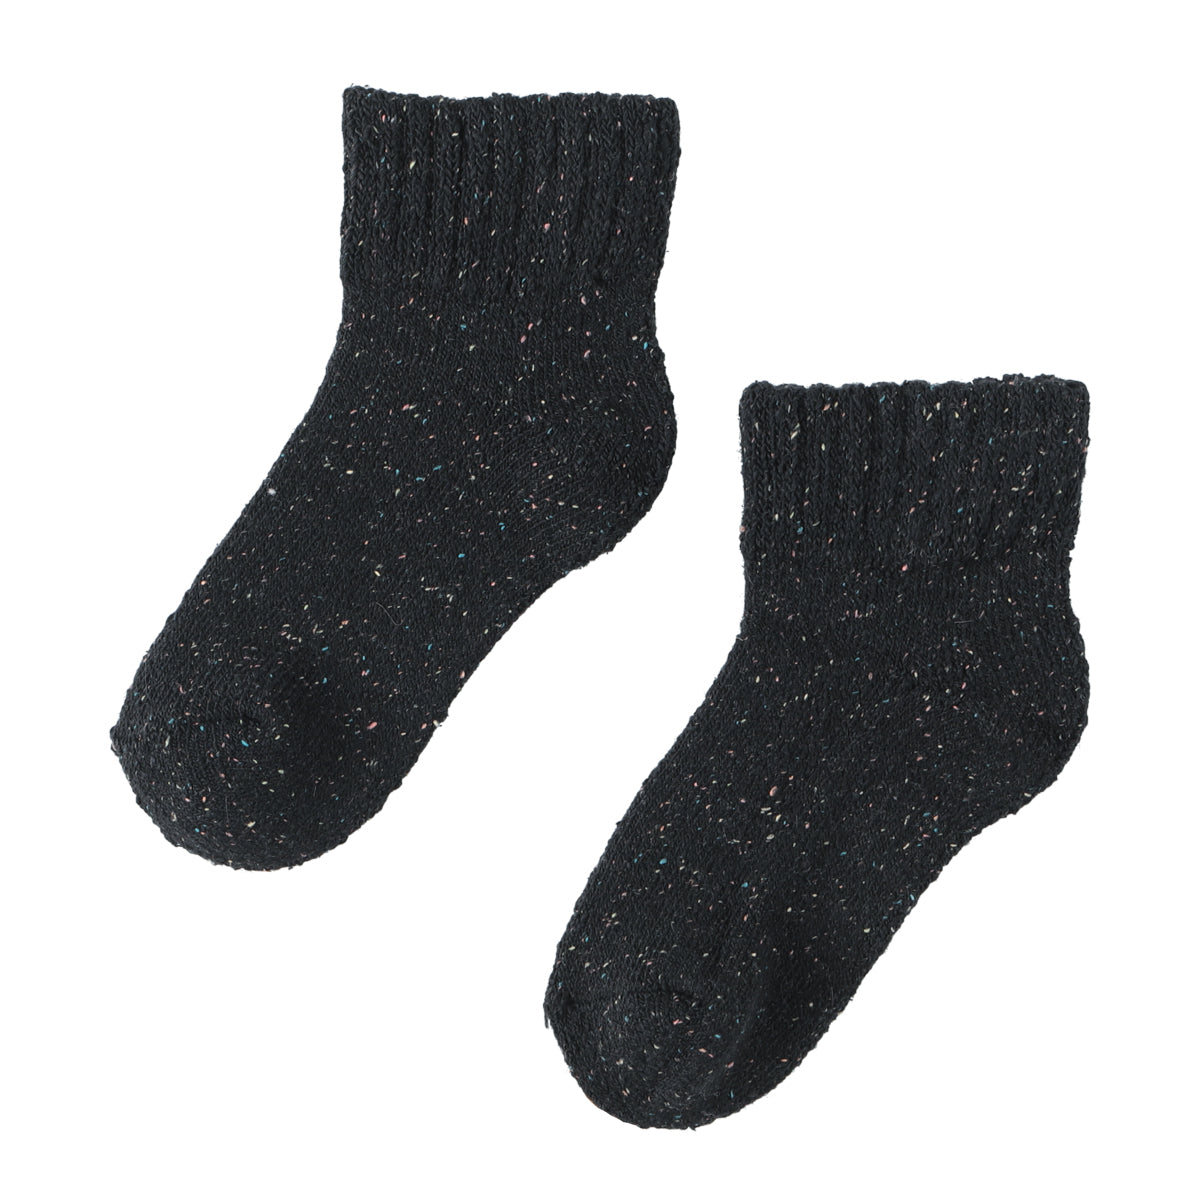 Silk and Angola mixed socks (BLACK)